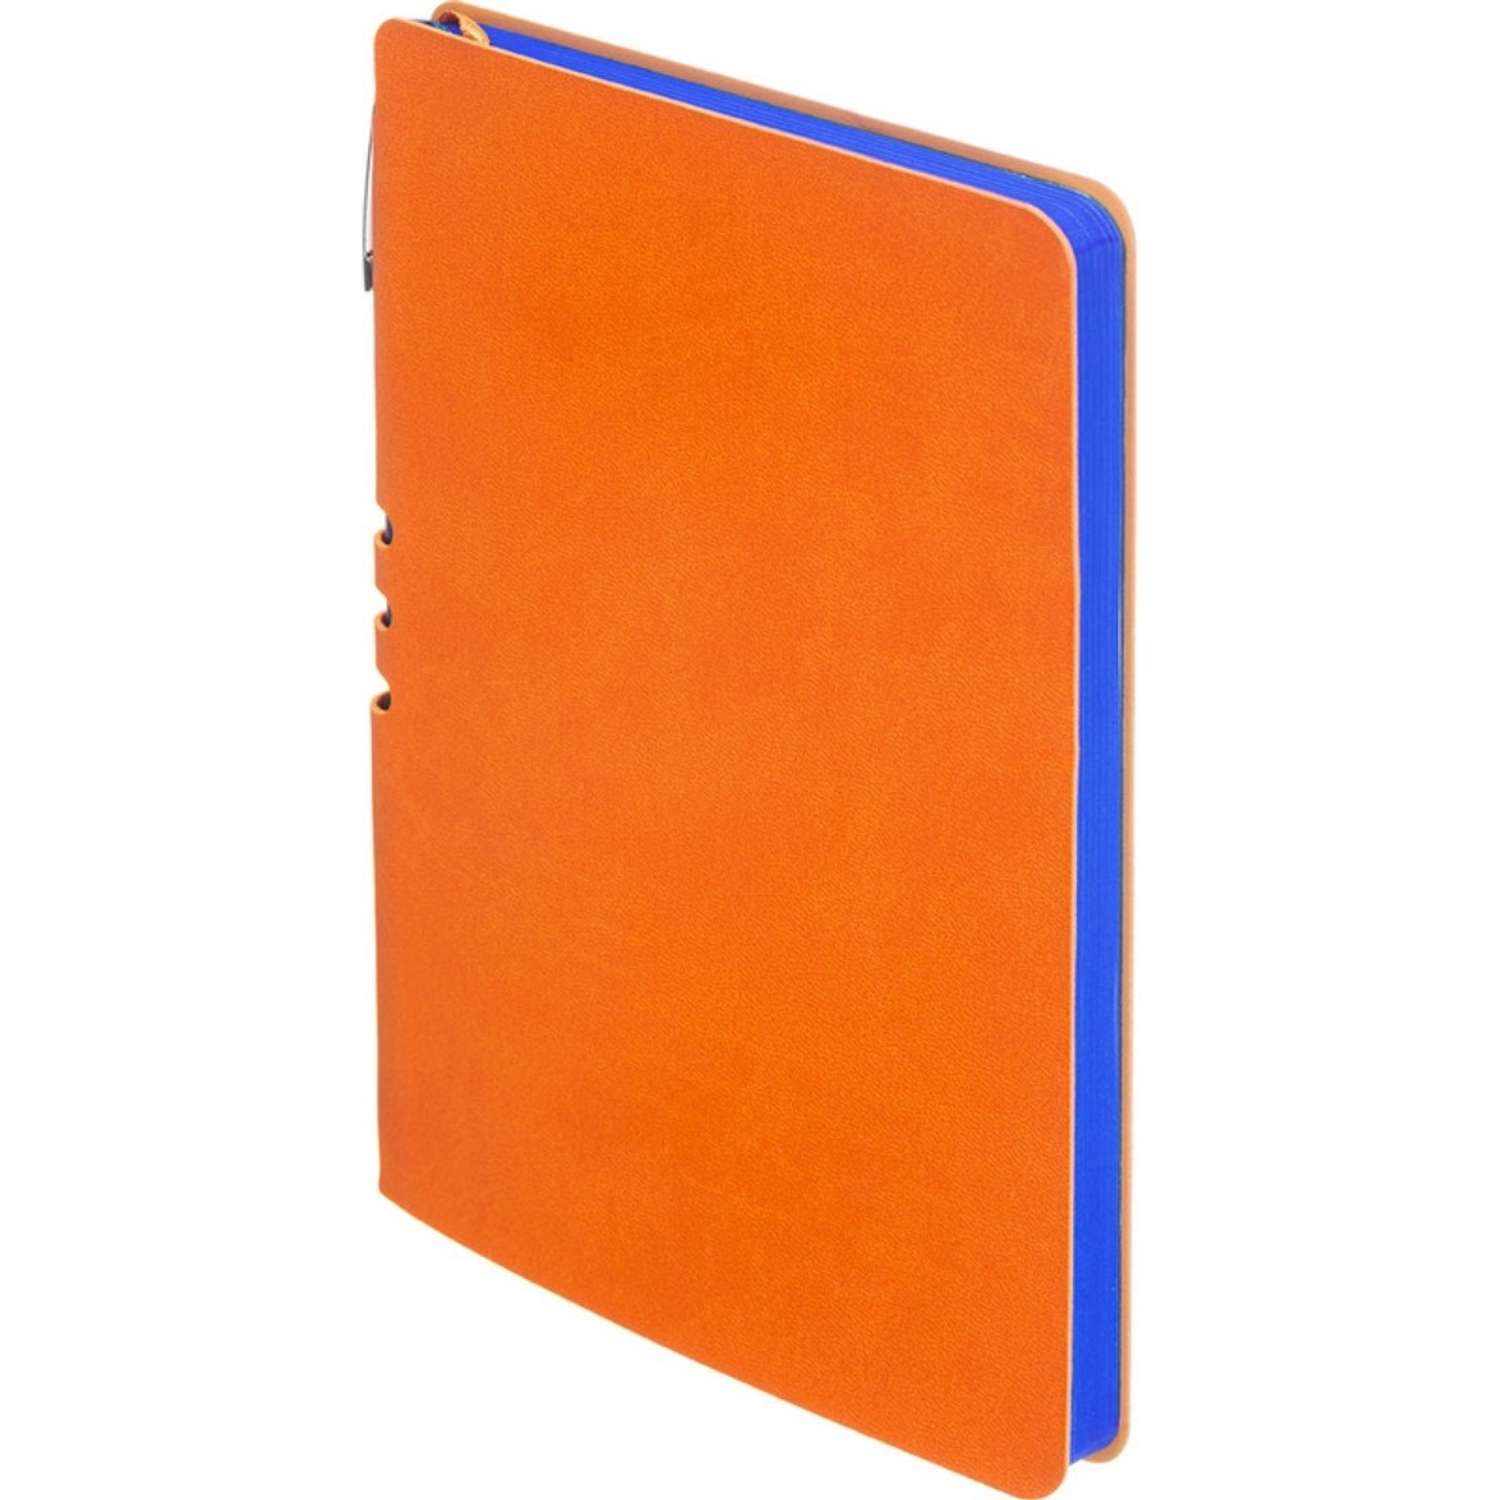 Бизнес-тетрадь Attache Light Book А5 112 листов линия цветной срез кожзаменитель оранжевый - фото 4